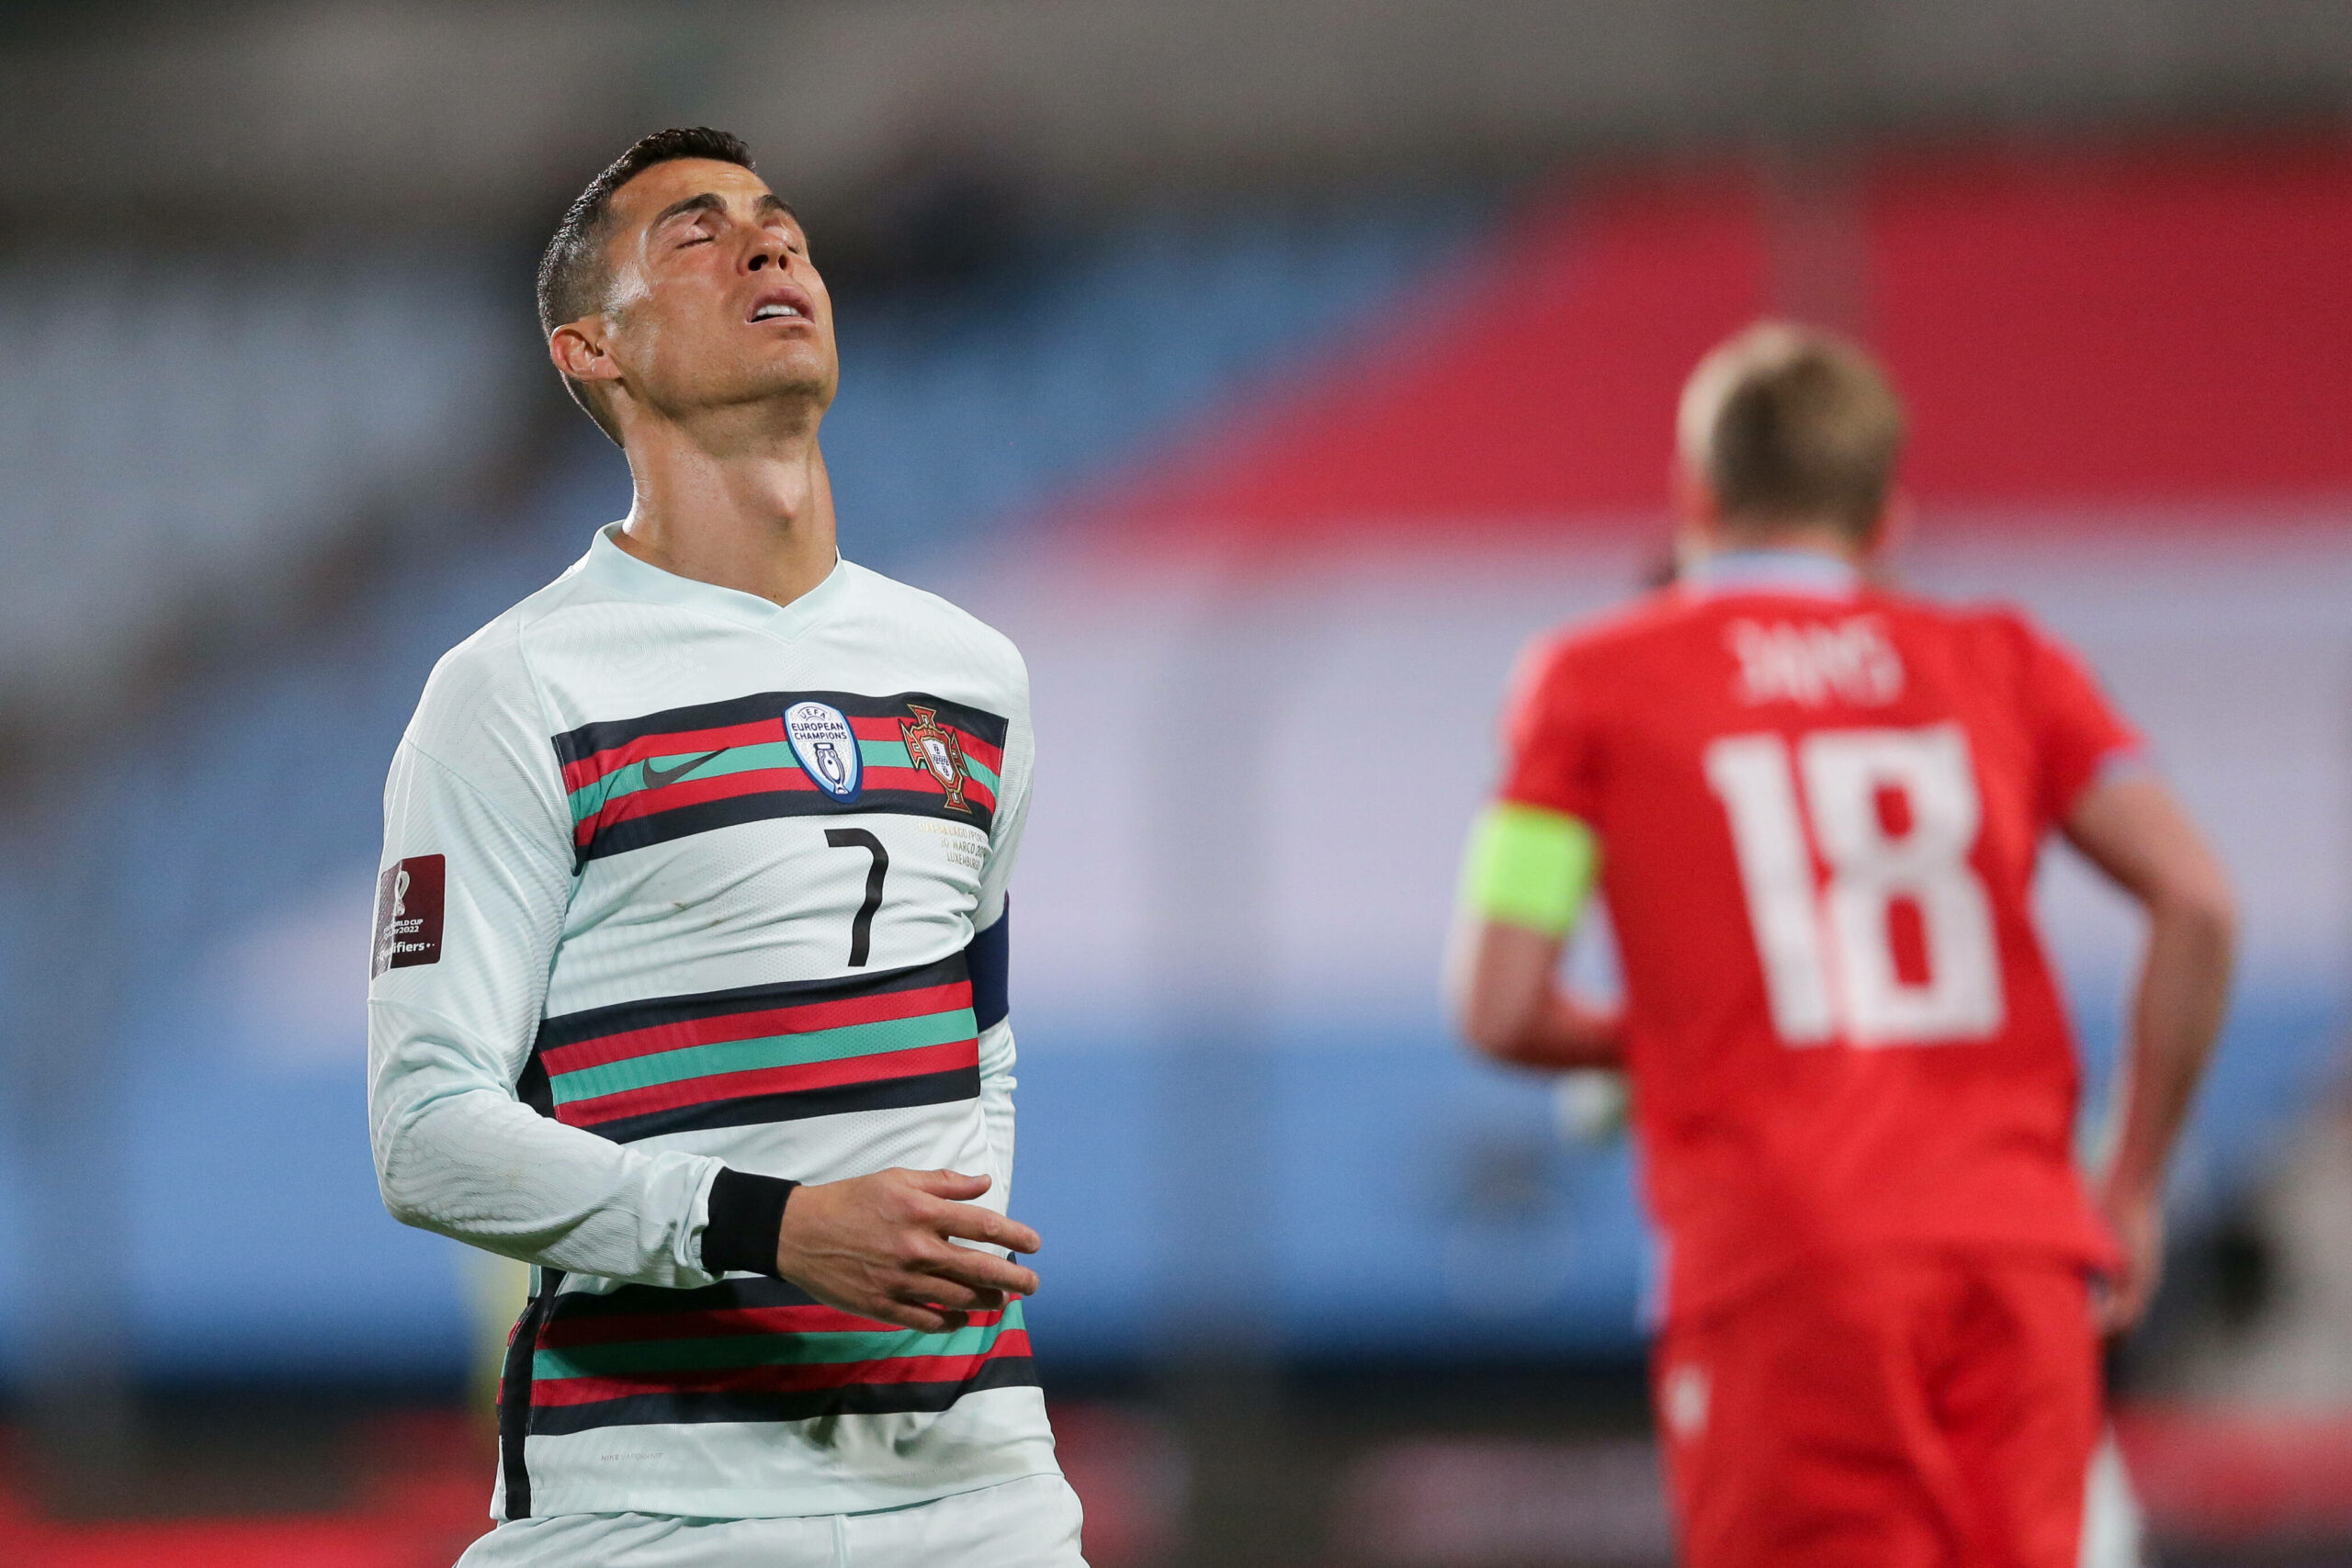 WM-Qualifikation | Kantersiege für Belgien & die Niederlande, Portugal mit Problemen